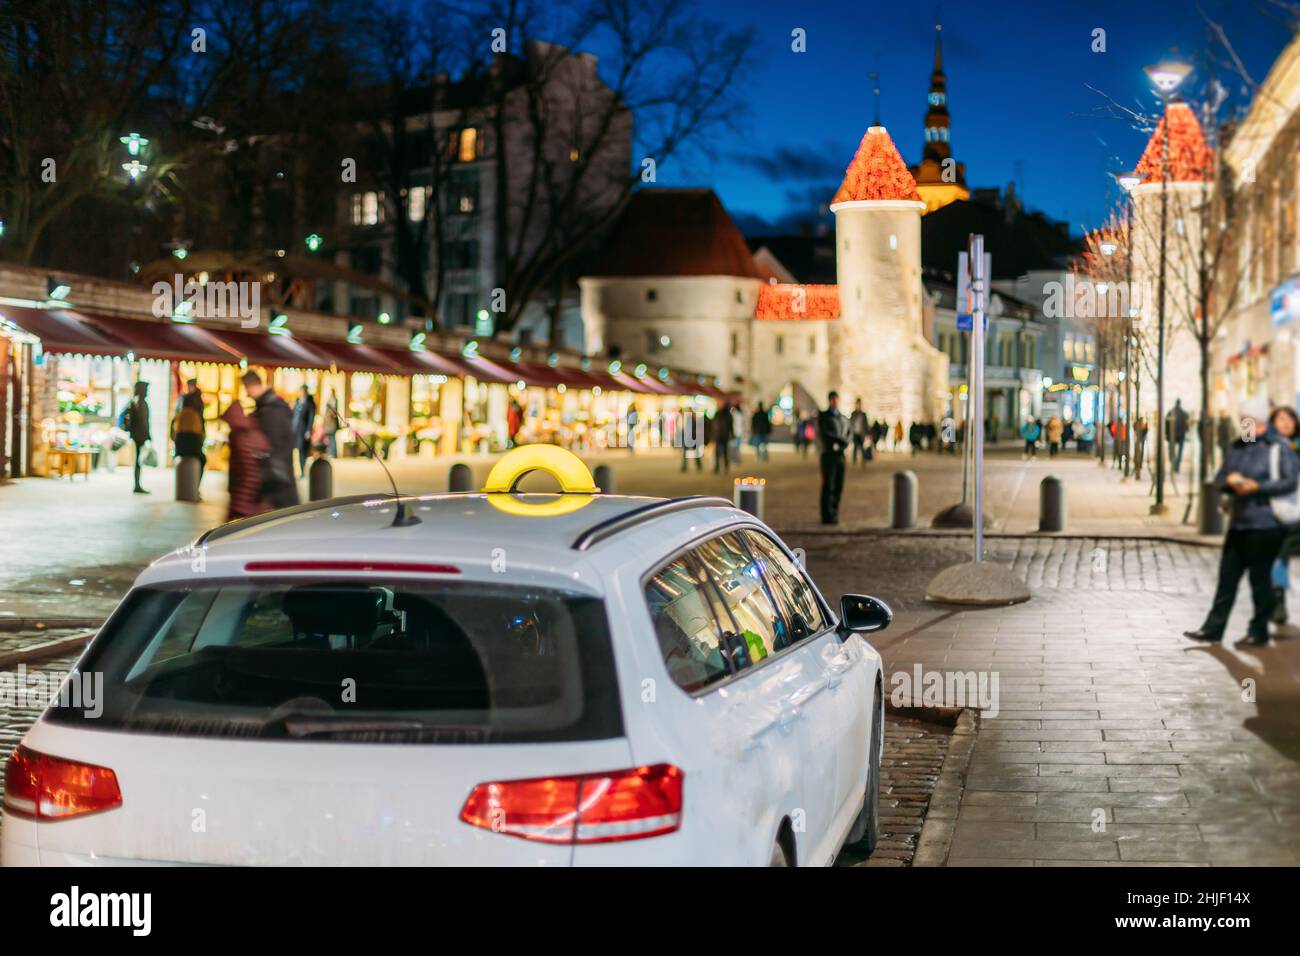 Tallinn, Estland. Taxi Auto Parken in der Nähe von Viru Gates Eingang zum alten Teil der Stadt der estnischen Hauptstadt. Wahrzeichen Viru Tor bei der Straßenbeleuchtung am Abend Stockfoto